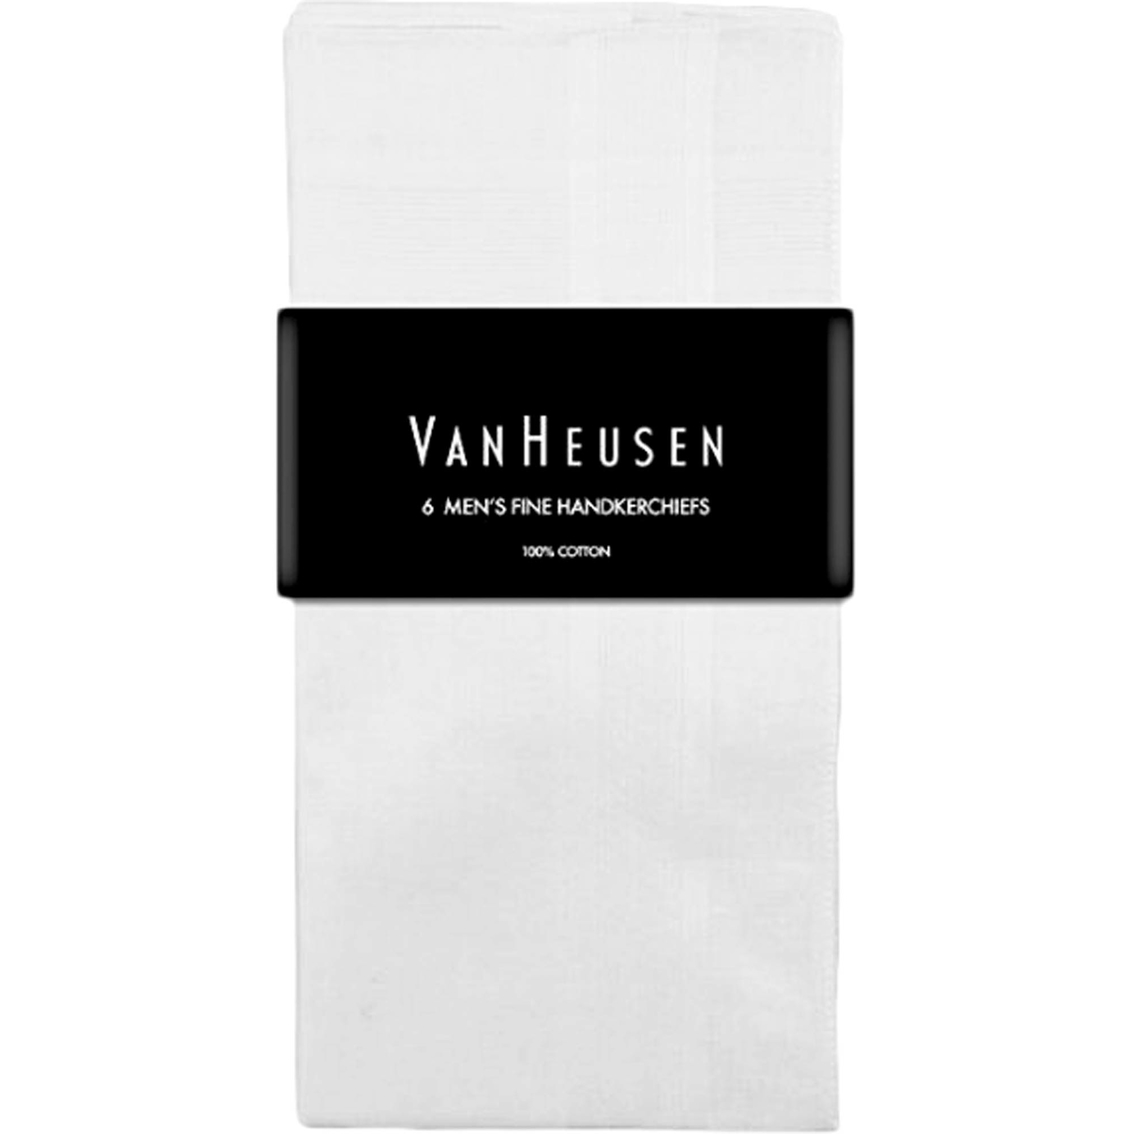 Van Heusen 6 Pk. Cotton Handkerchiefs - Image 4 of 4